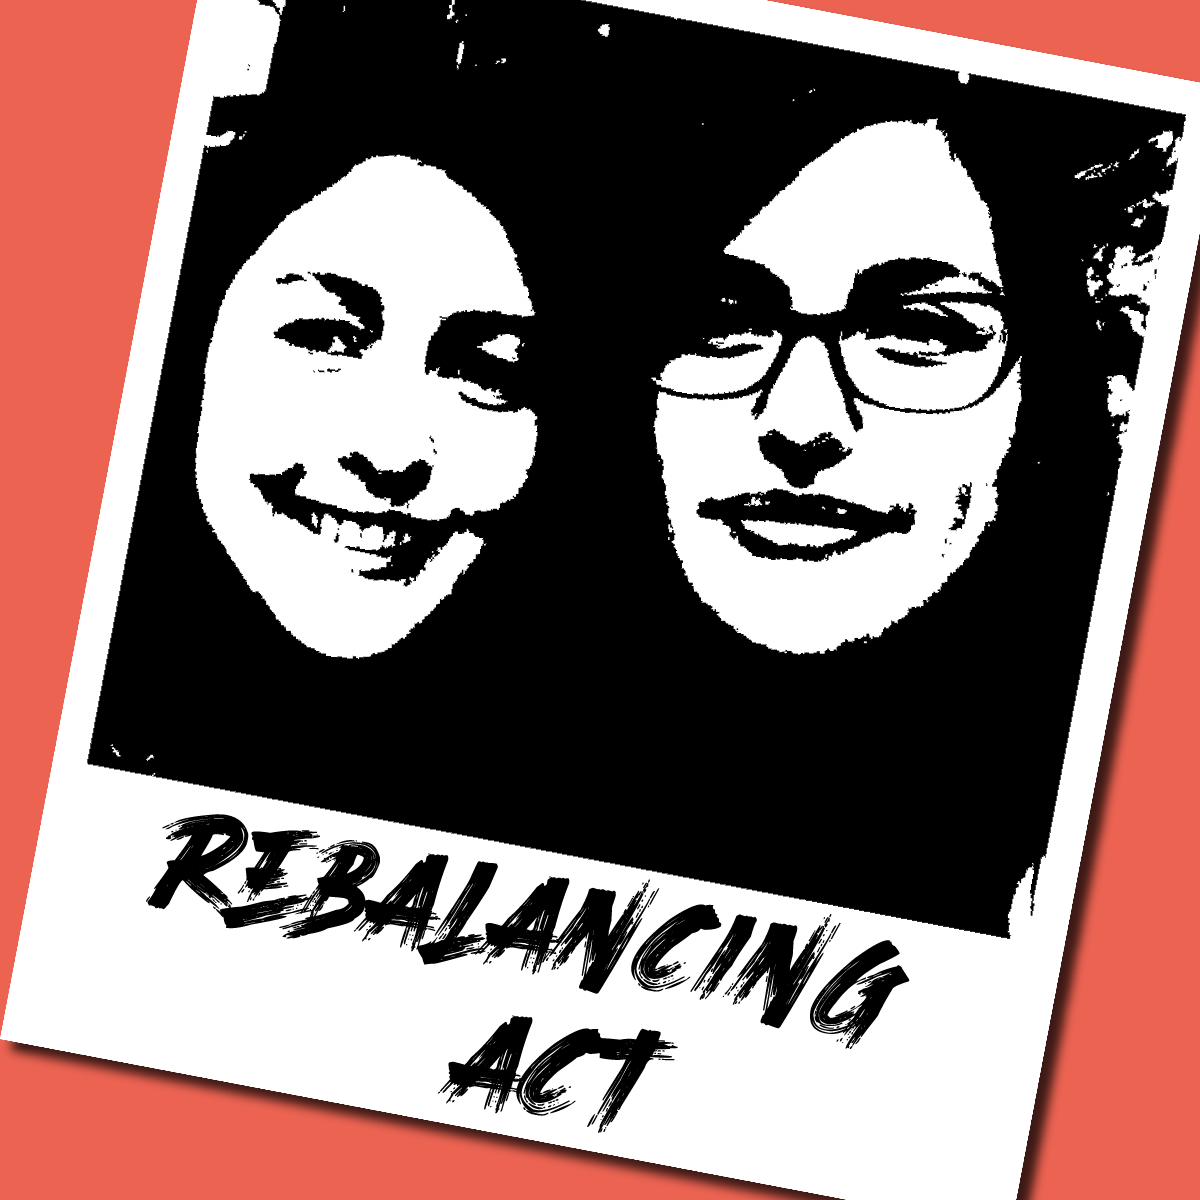 Rebalancing Act